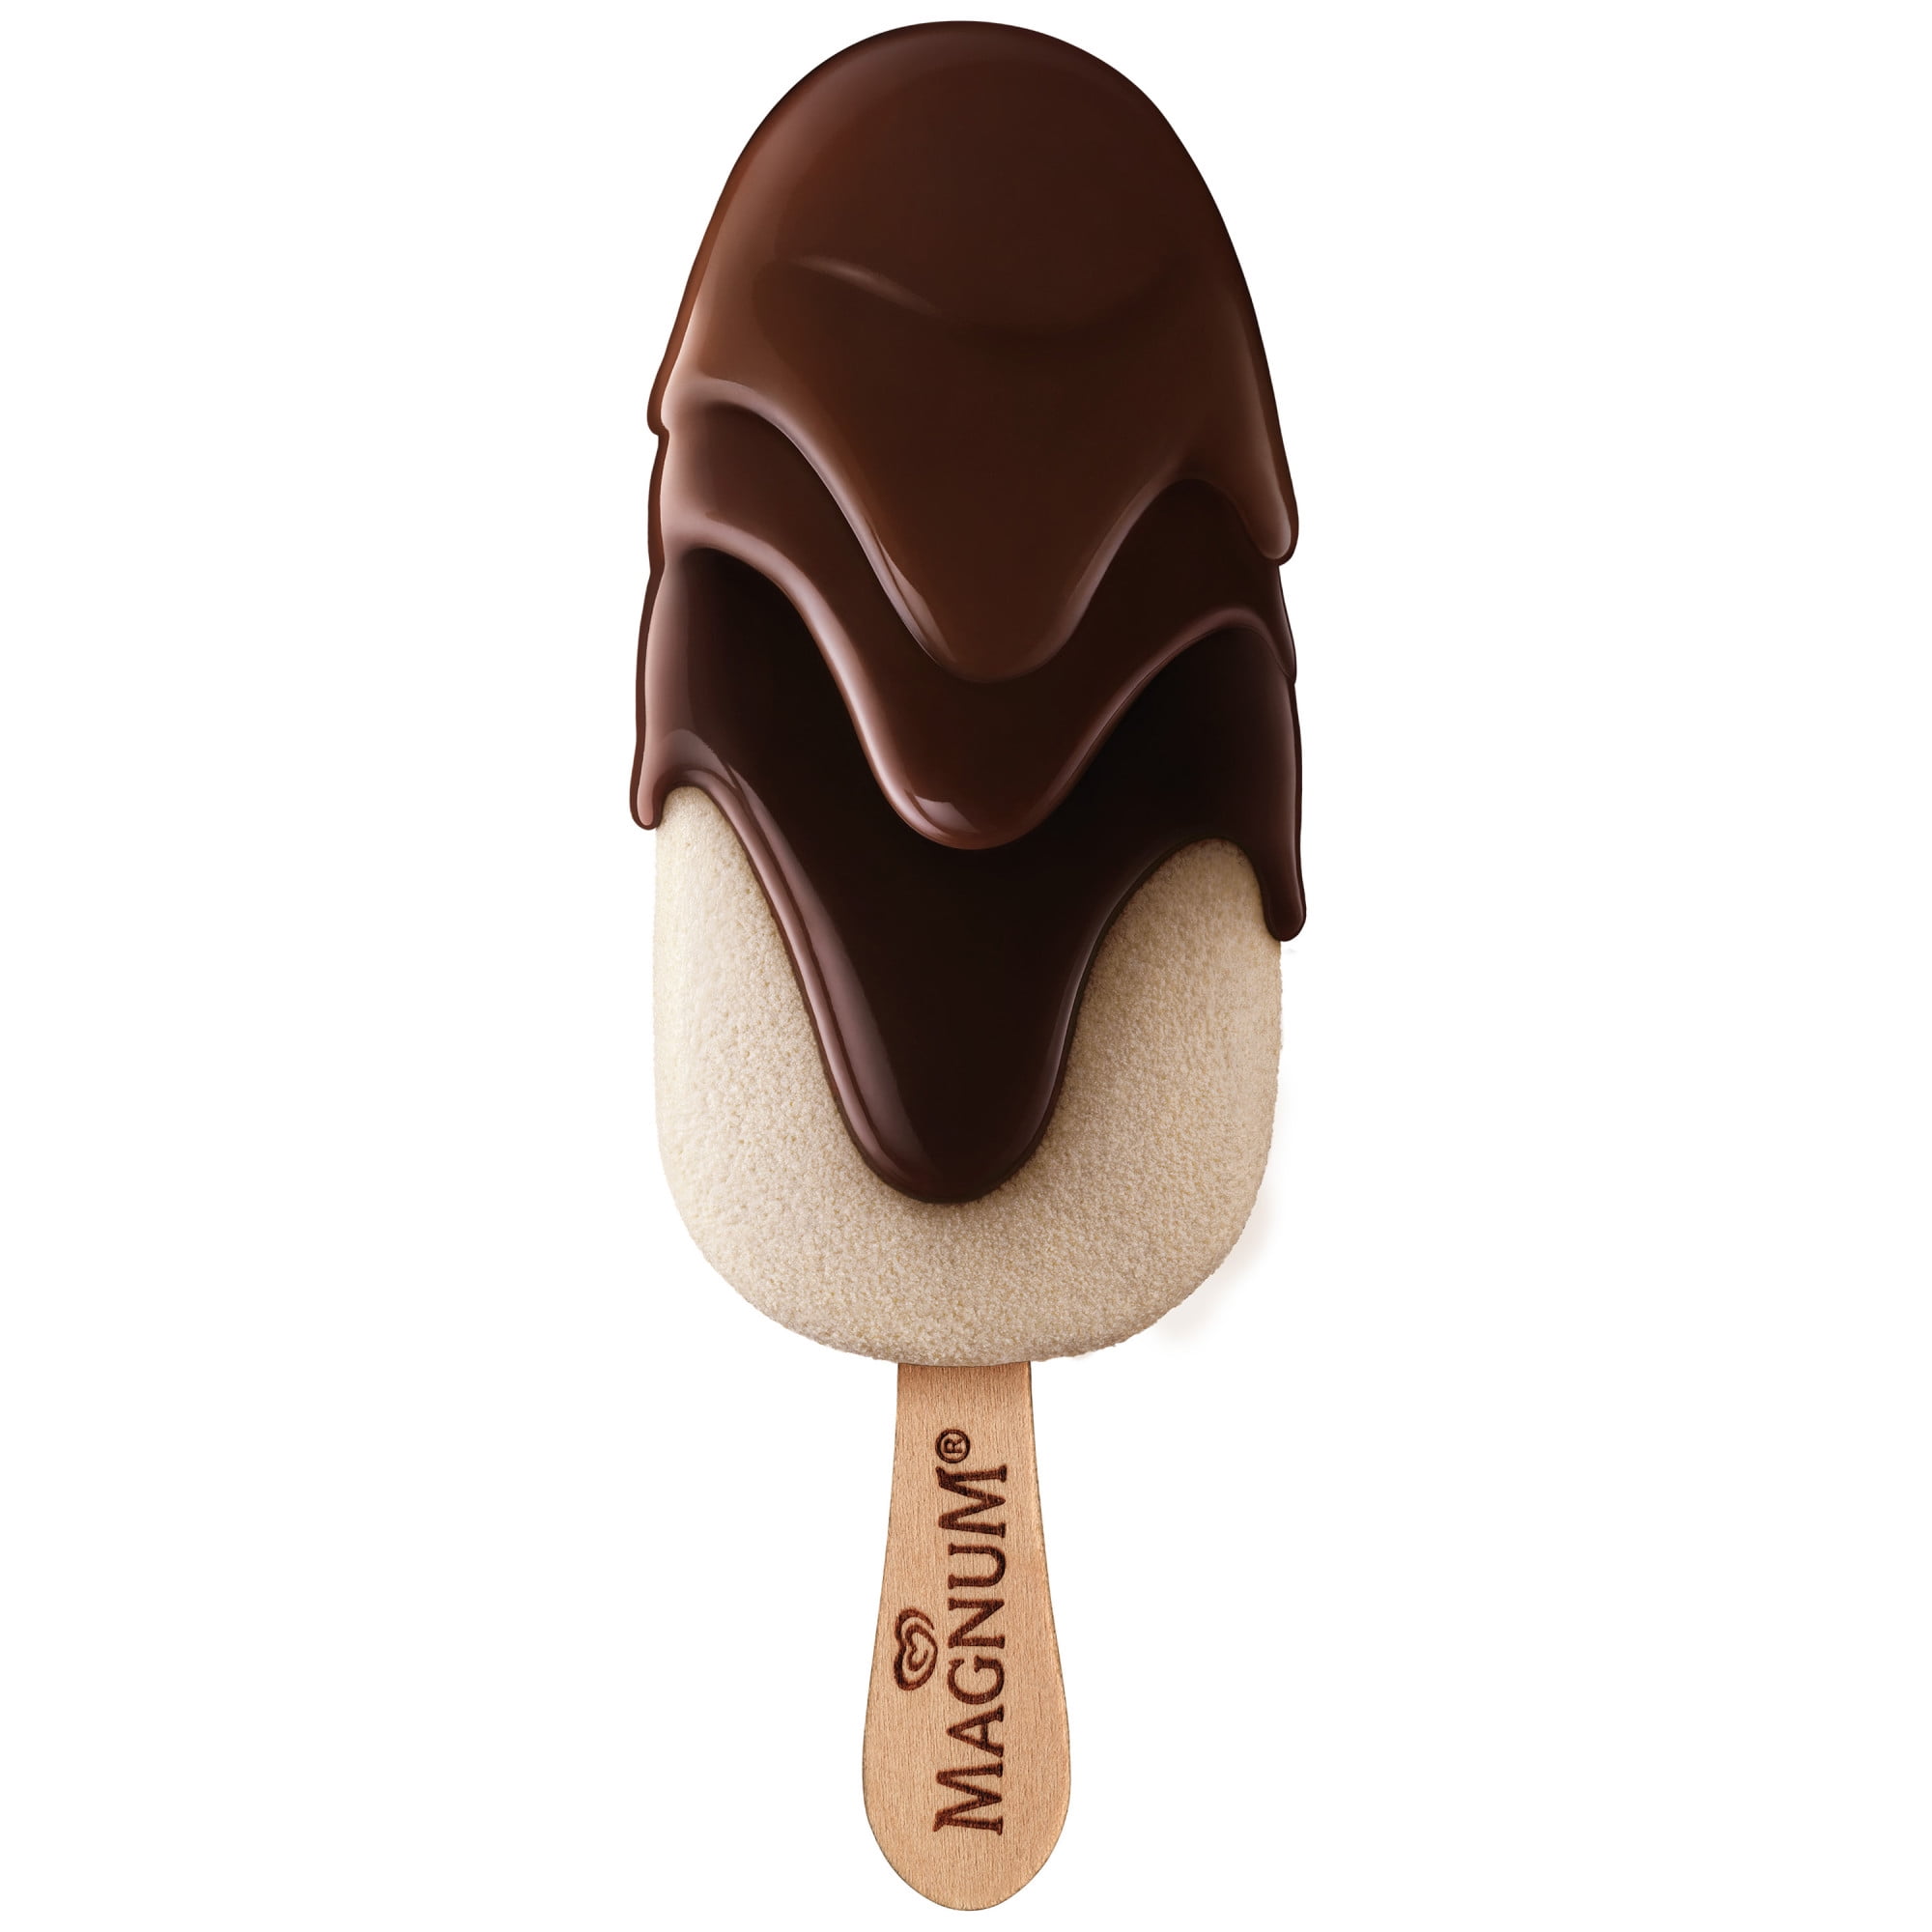 Magnum® Tub Vanilla Chocolate Ice Cream